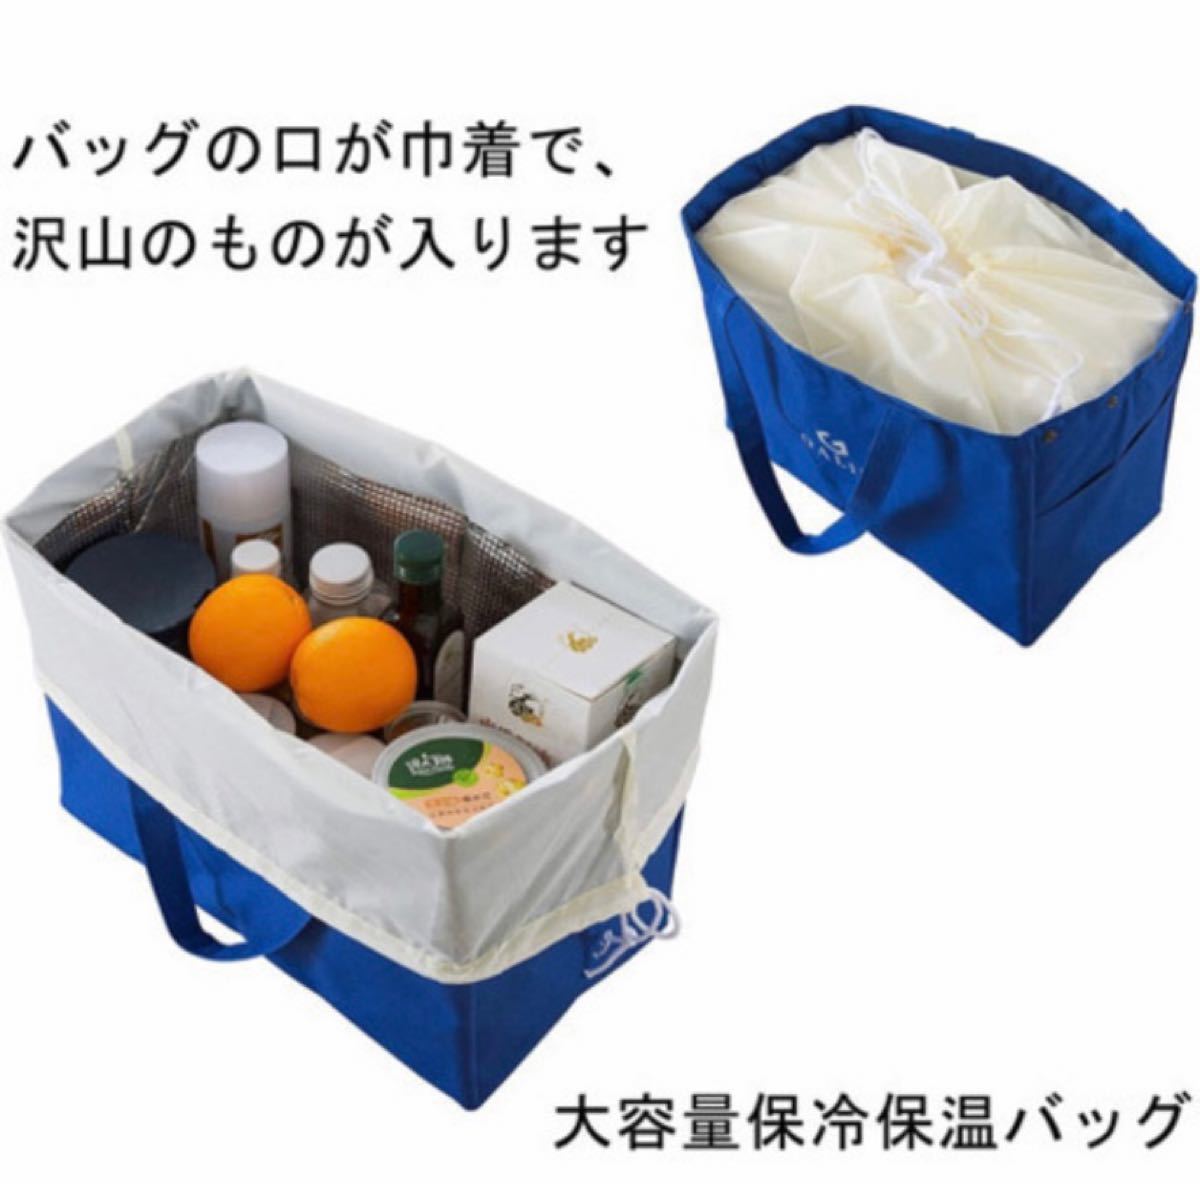 【多機能】買物カゴ用バッグ エコバッグ ランチバッグ 保温保冷 レジかご 折畳み